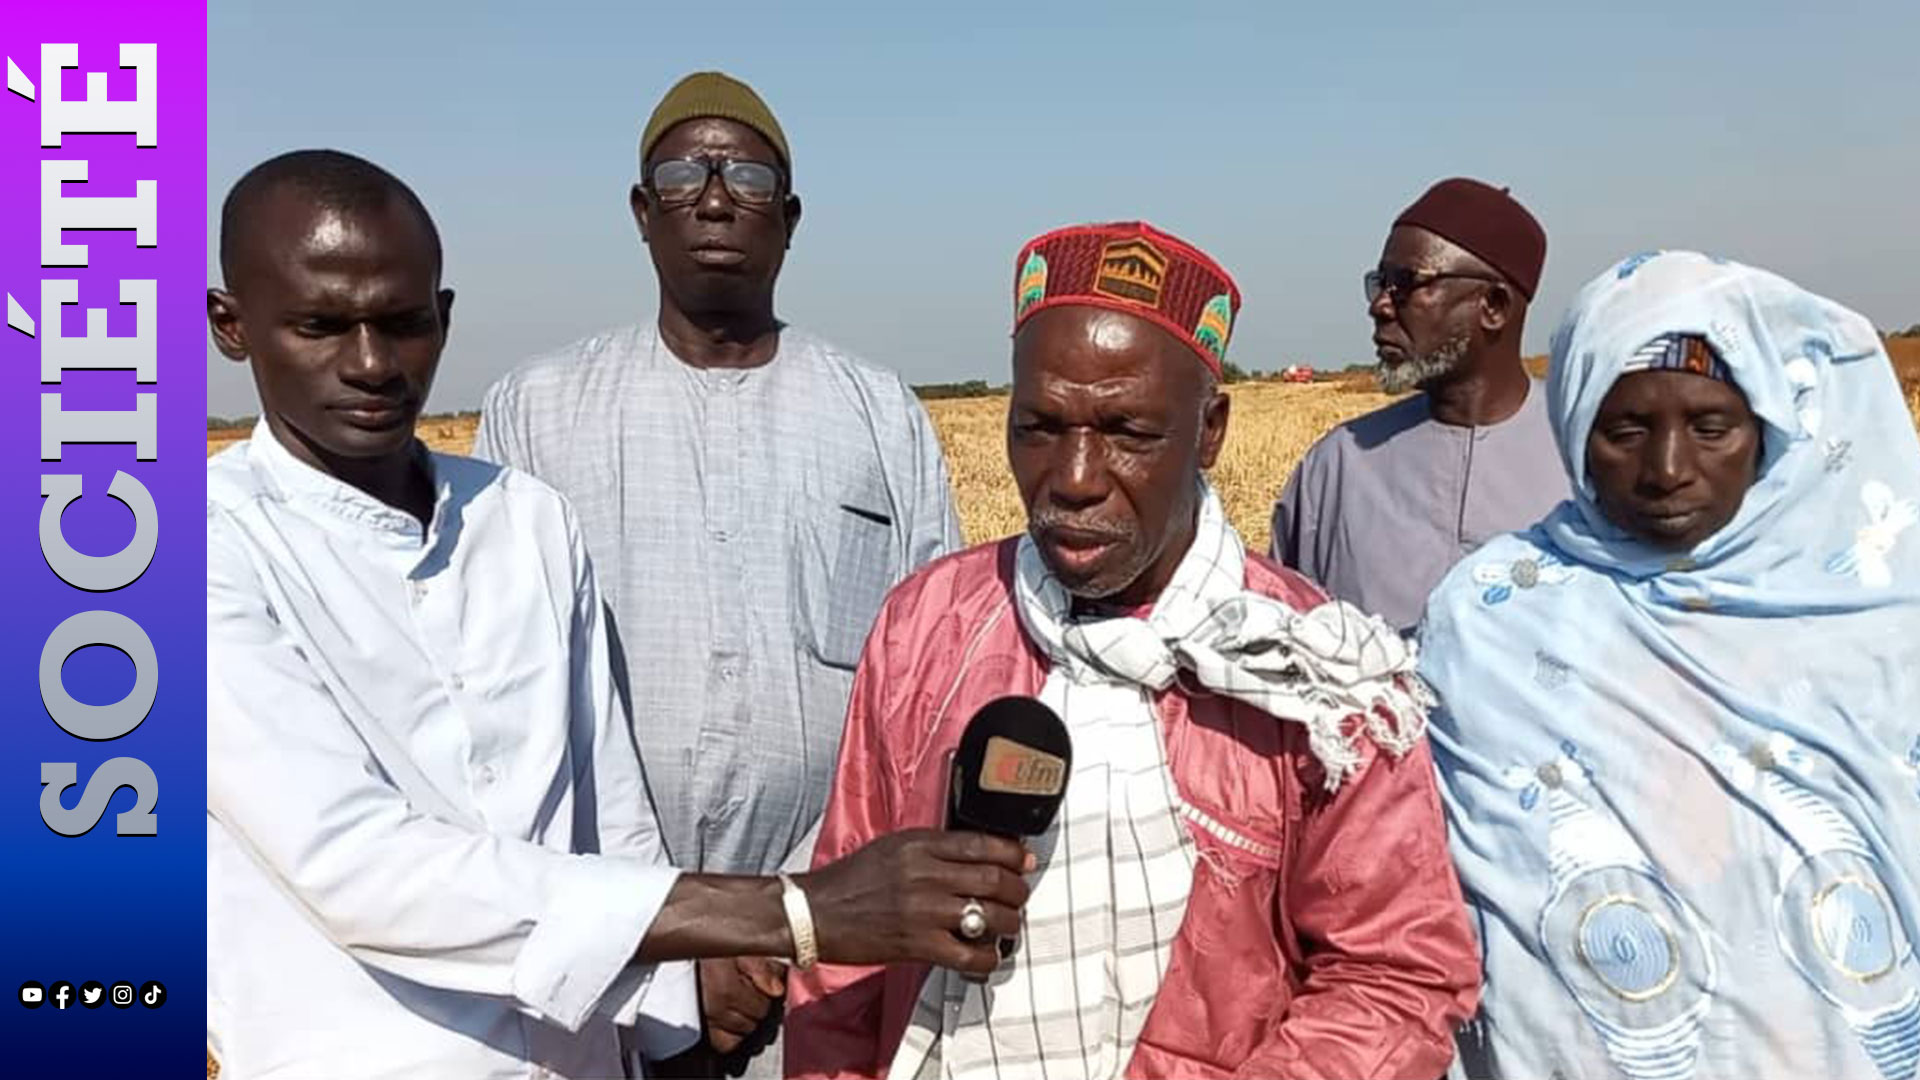 KOLDA : Colère des producteurs semenciers de riz du bassin de l’Anambe restés trois ans sans paiement… (Mamadou Diang Diallo, opérateur économique/producteur semencier).